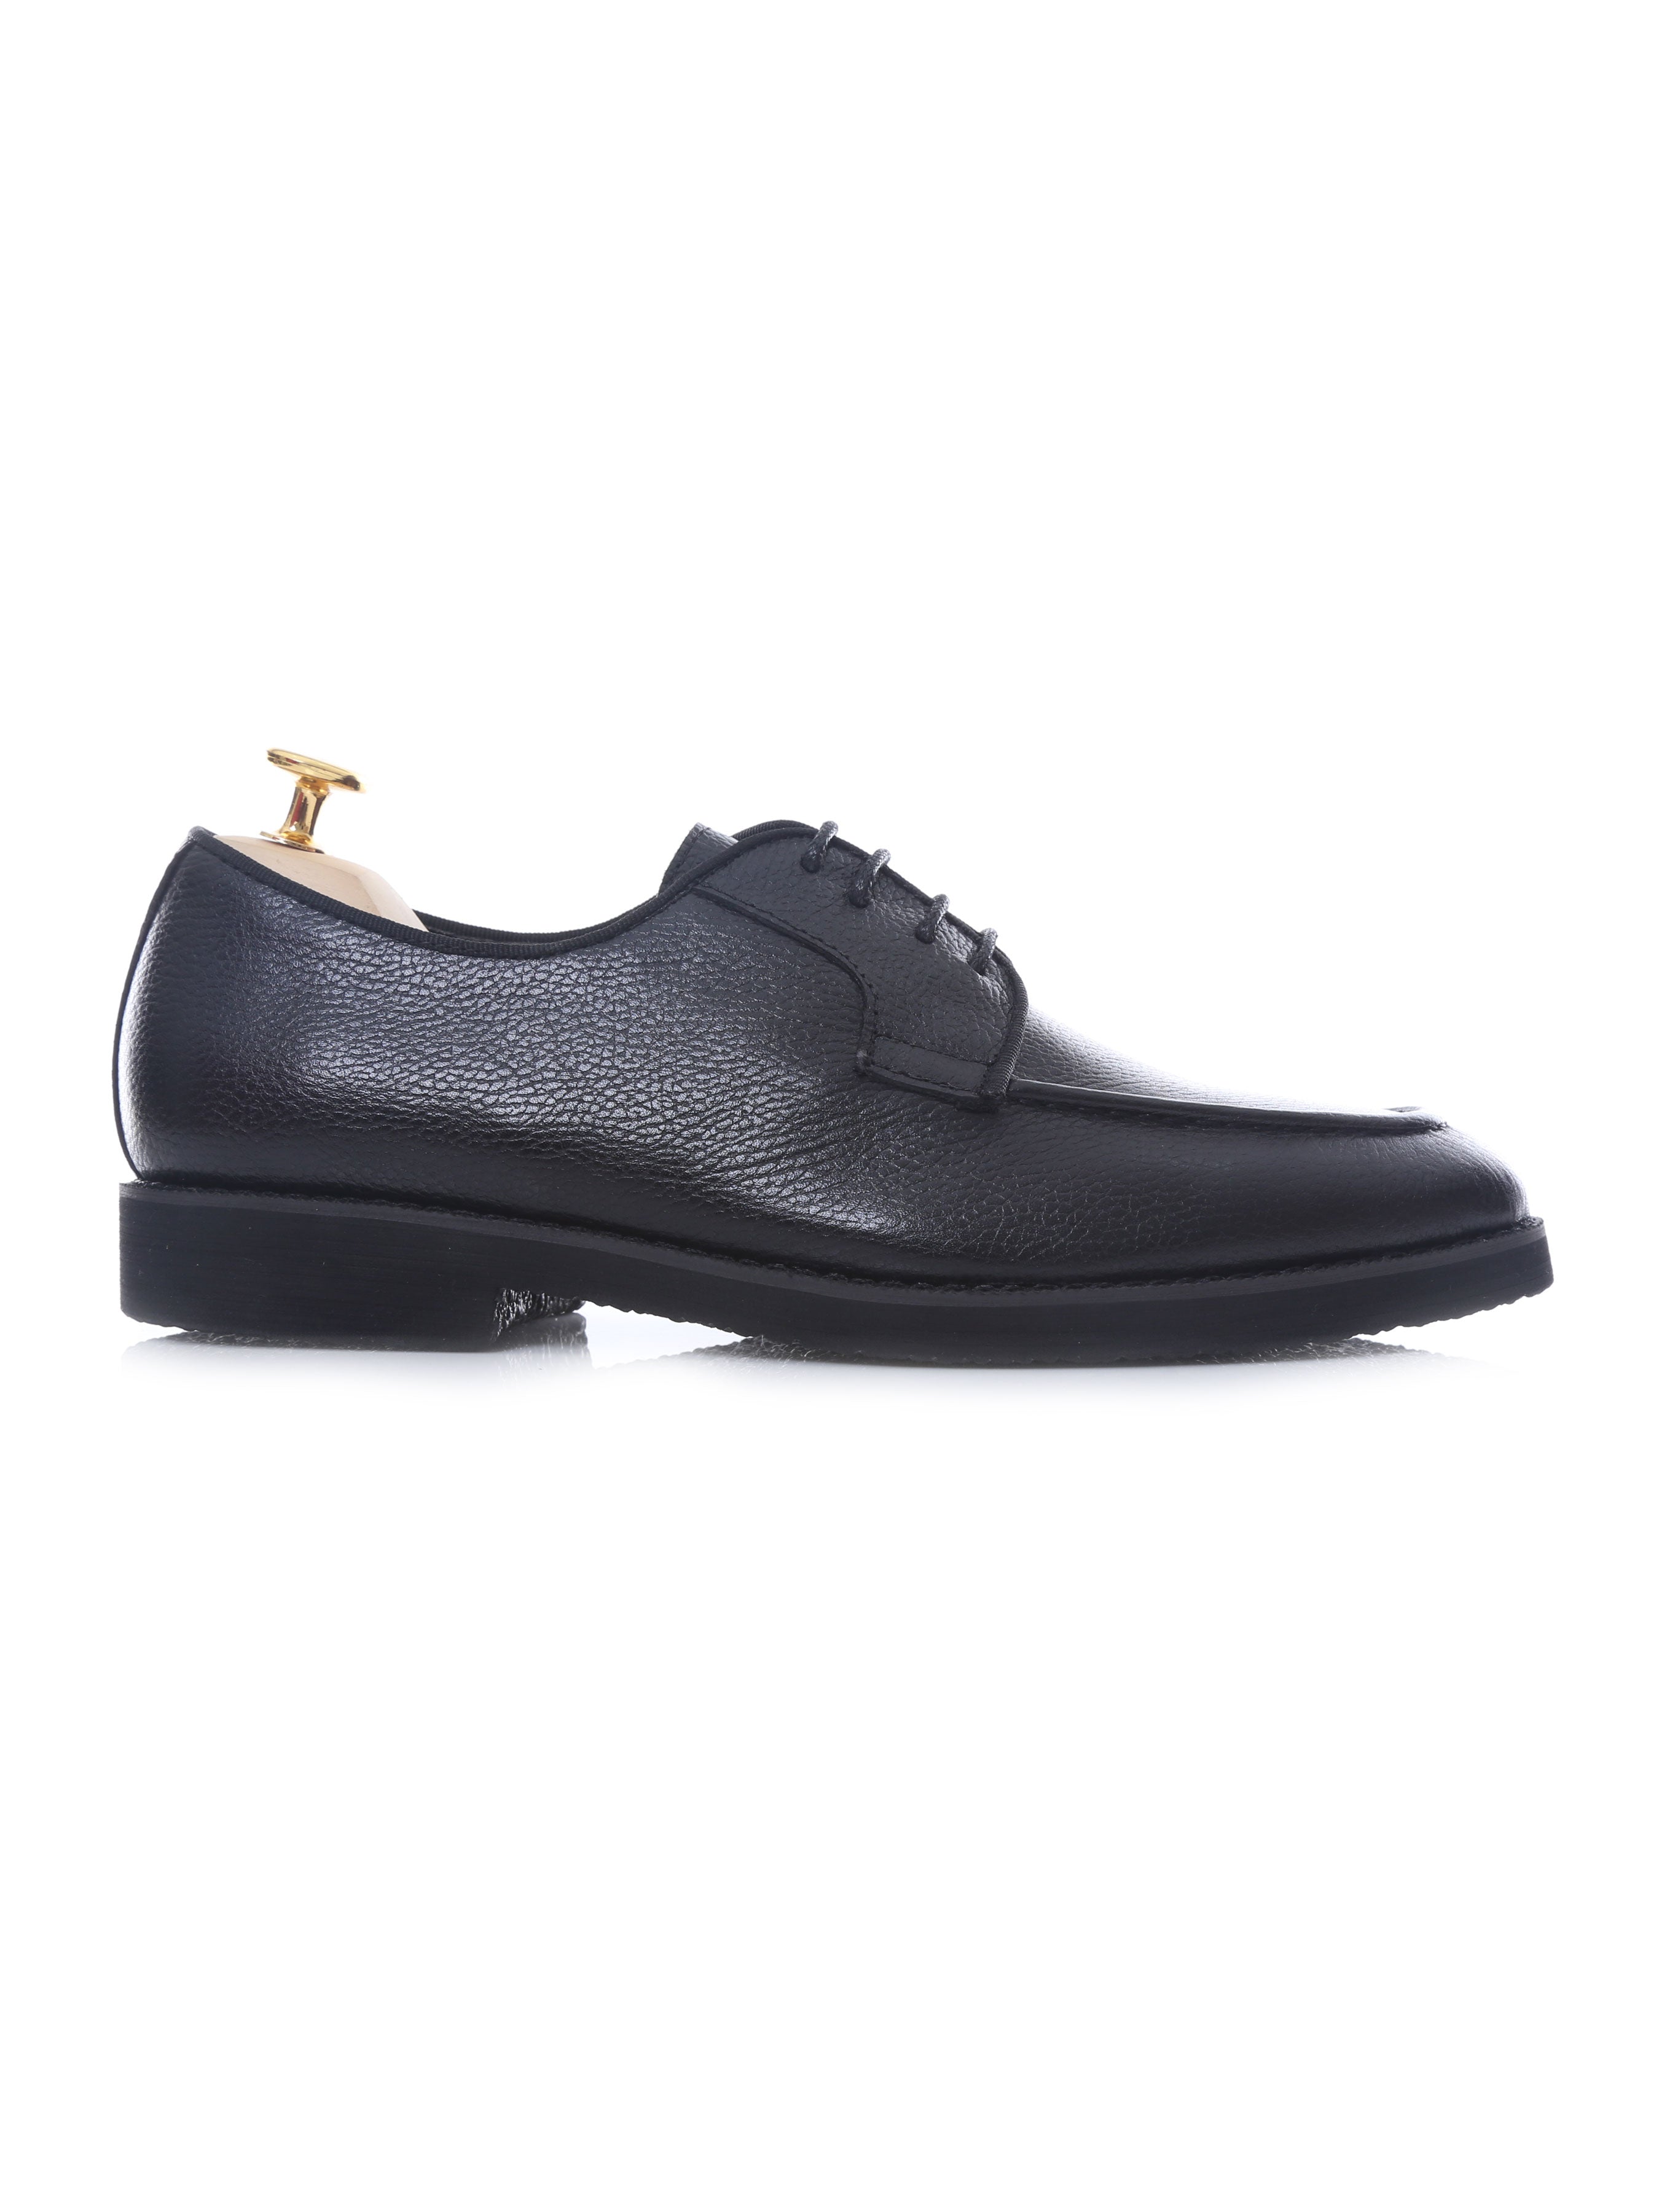 Blucher Lace Up - Black Pebble Grain Leather (Crepe Sole) - Zeve Shoes